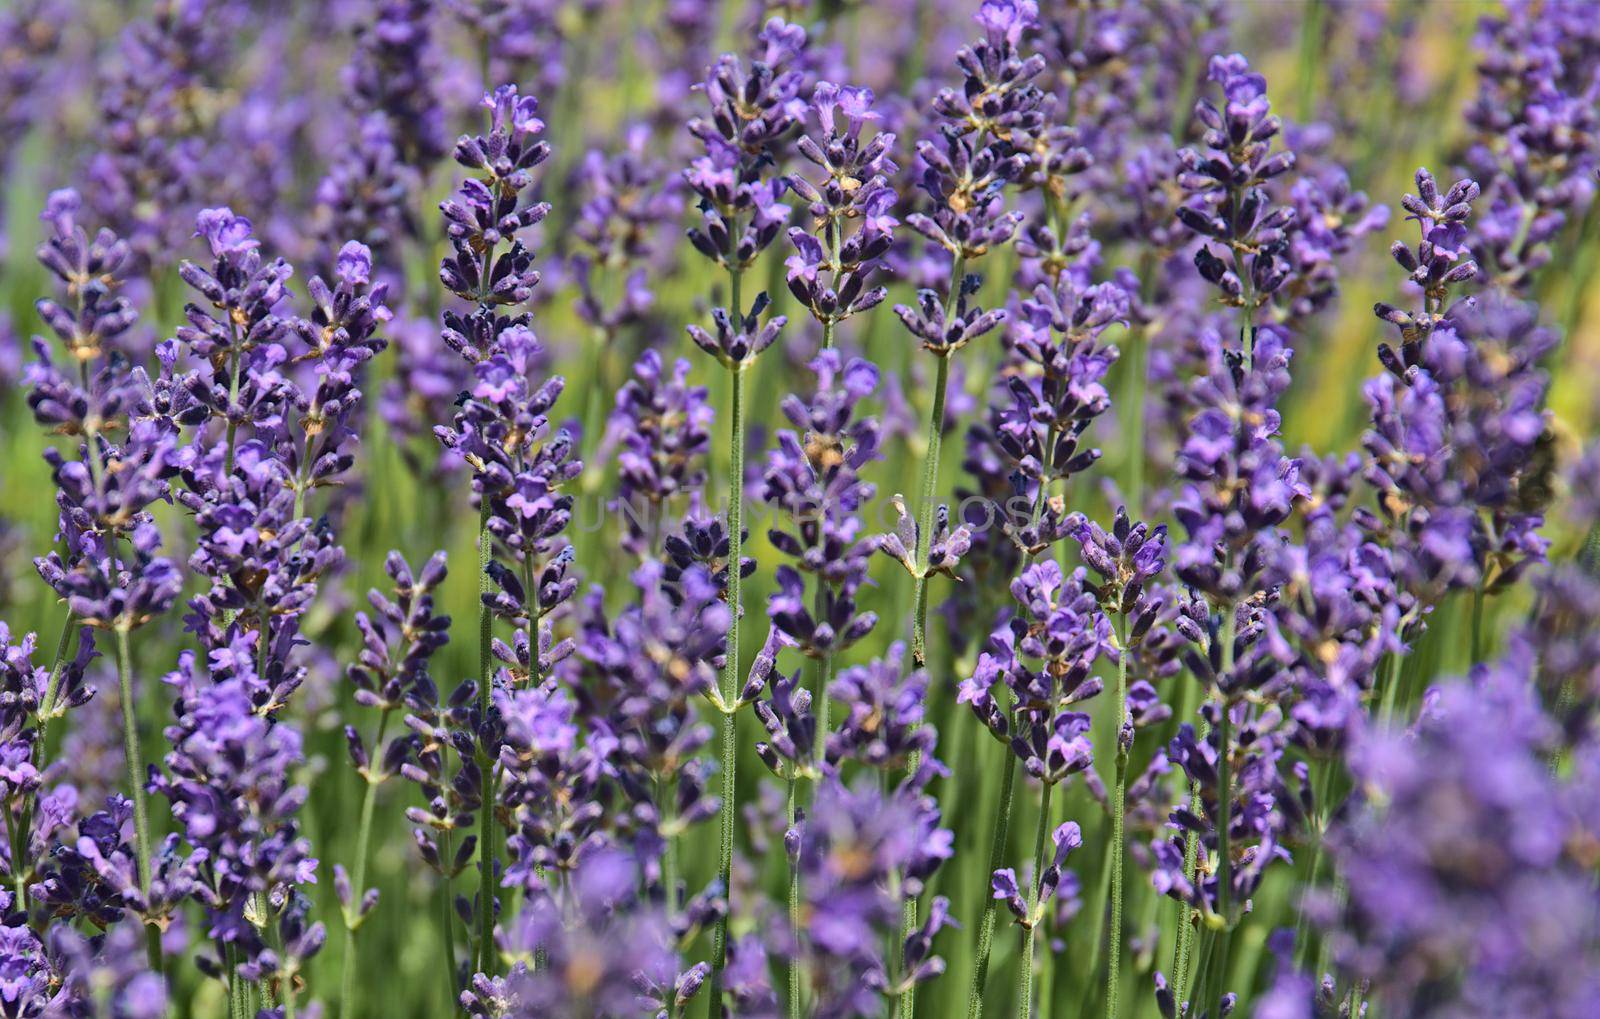 Purple lavender in blossom close up